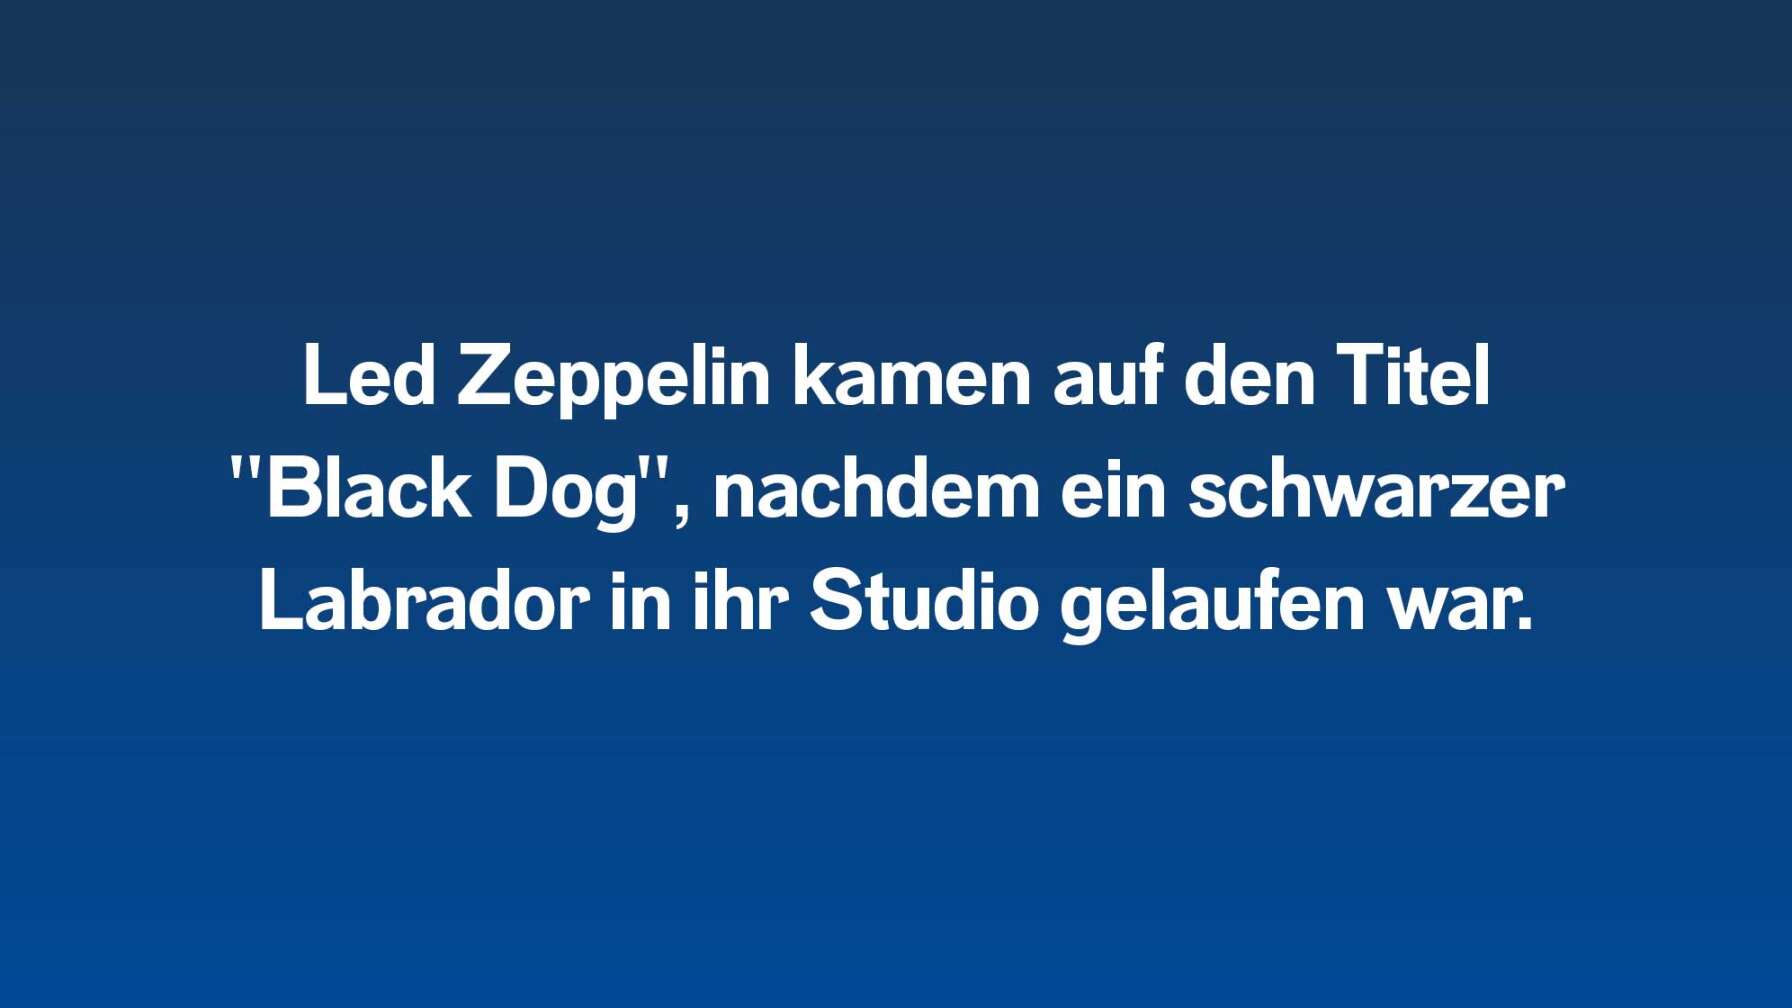 Led Zeppelin kamen auf den Titel  "Black Dog", nachdem ein schwarzer Labrador in ihr Studio gelaufen war.